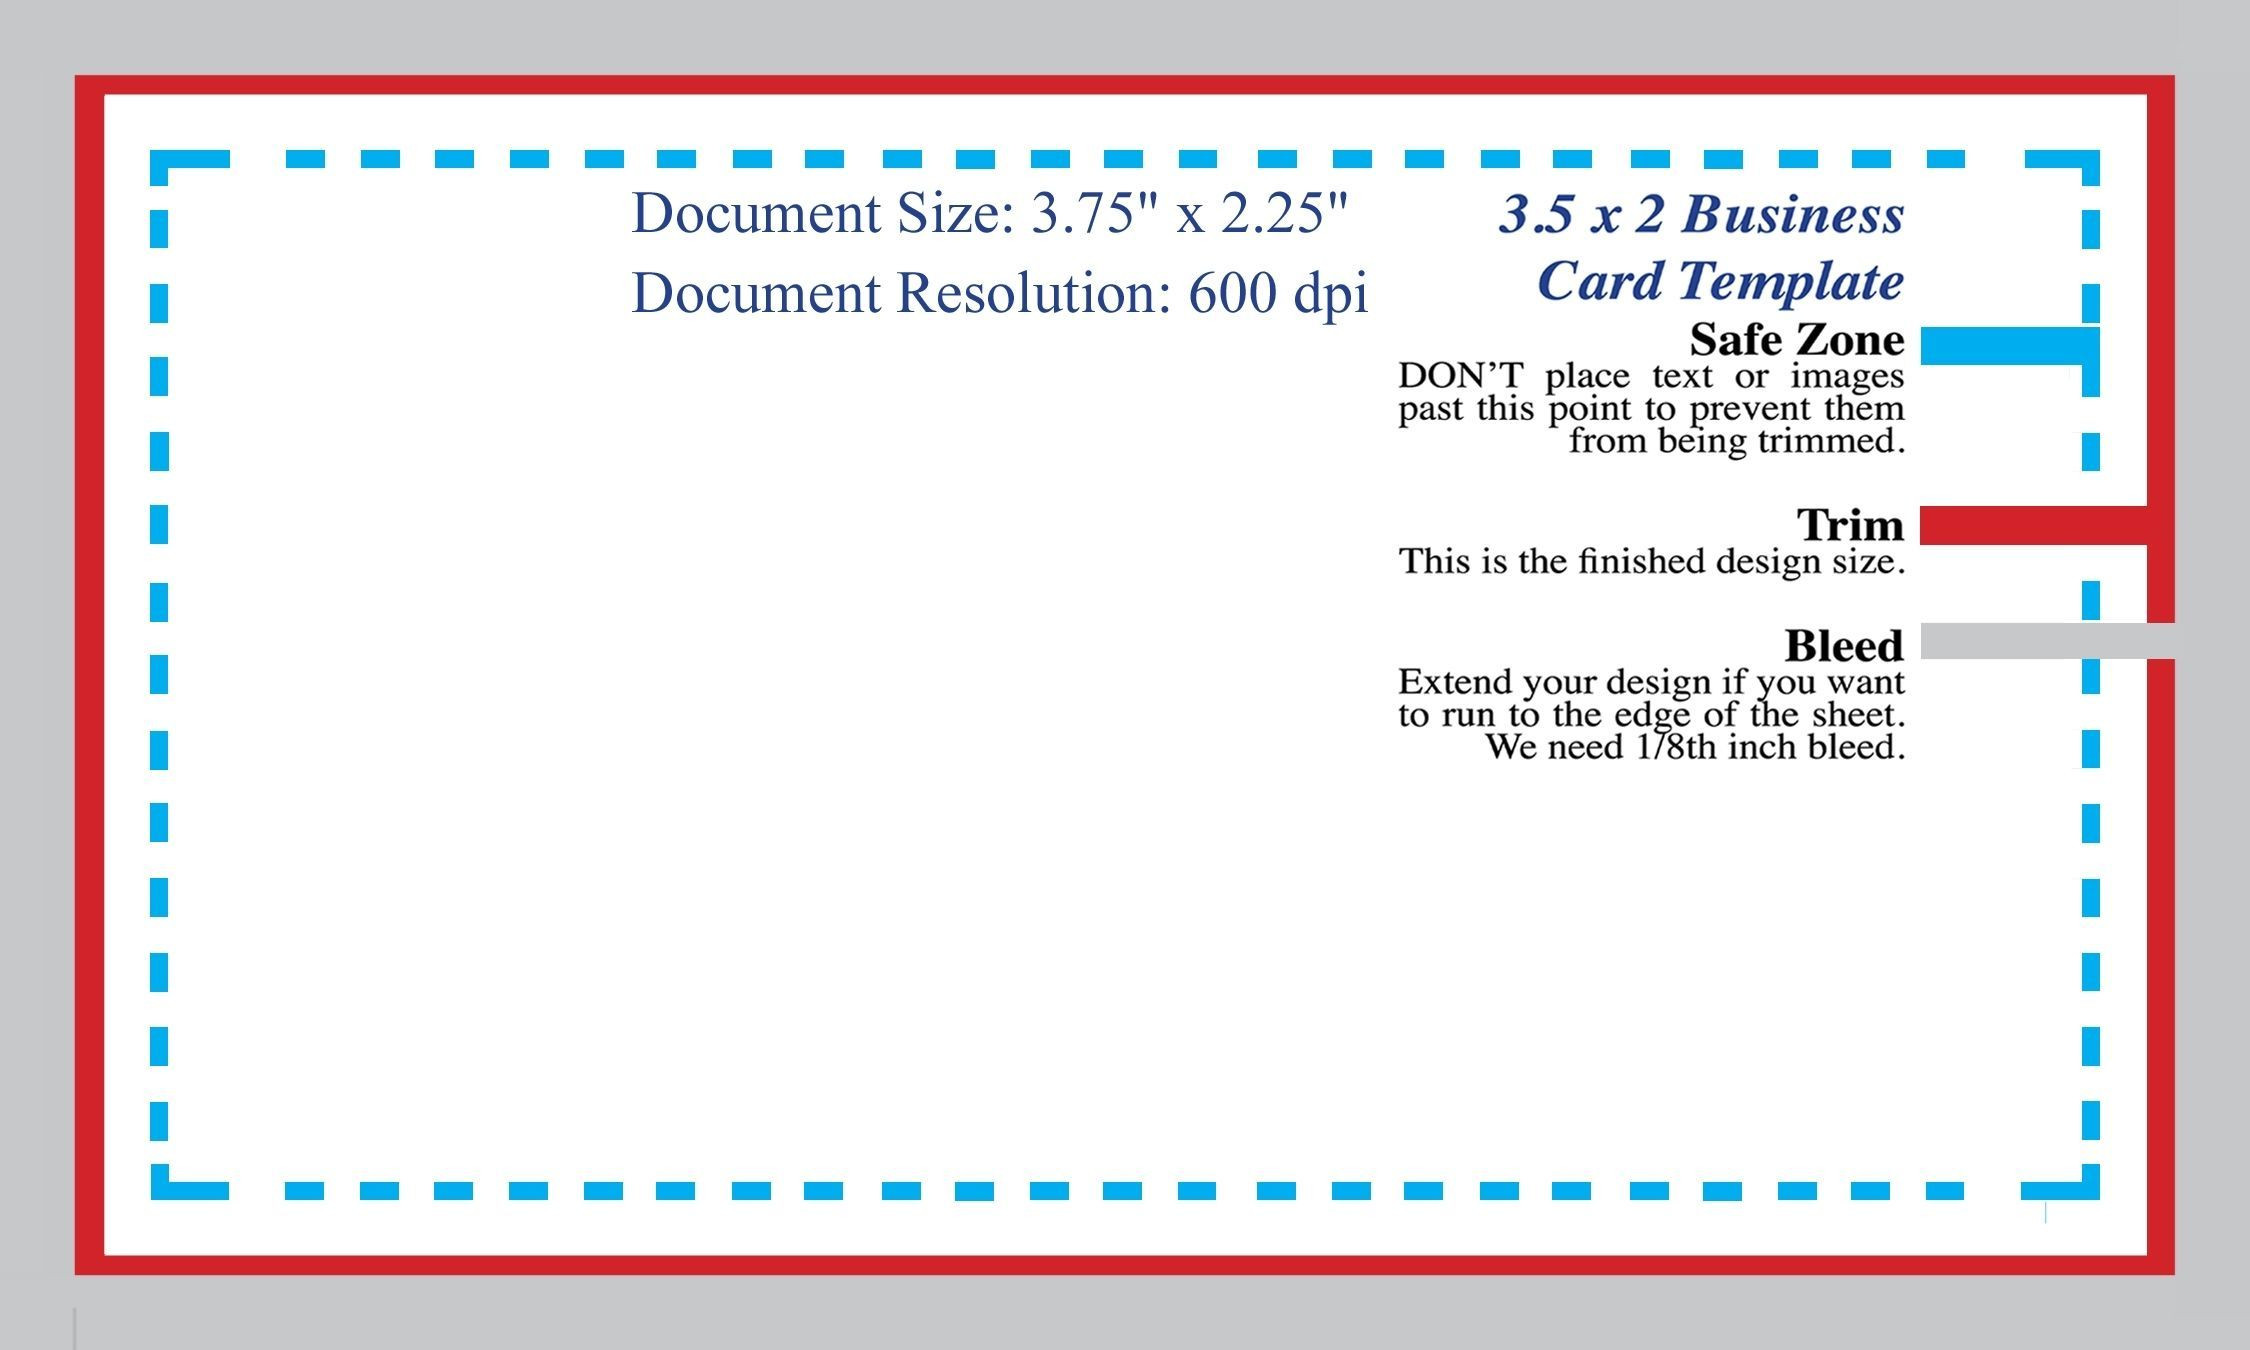 Standard Business Card Blank Template Shop Template Of Business Card Template Photoshop